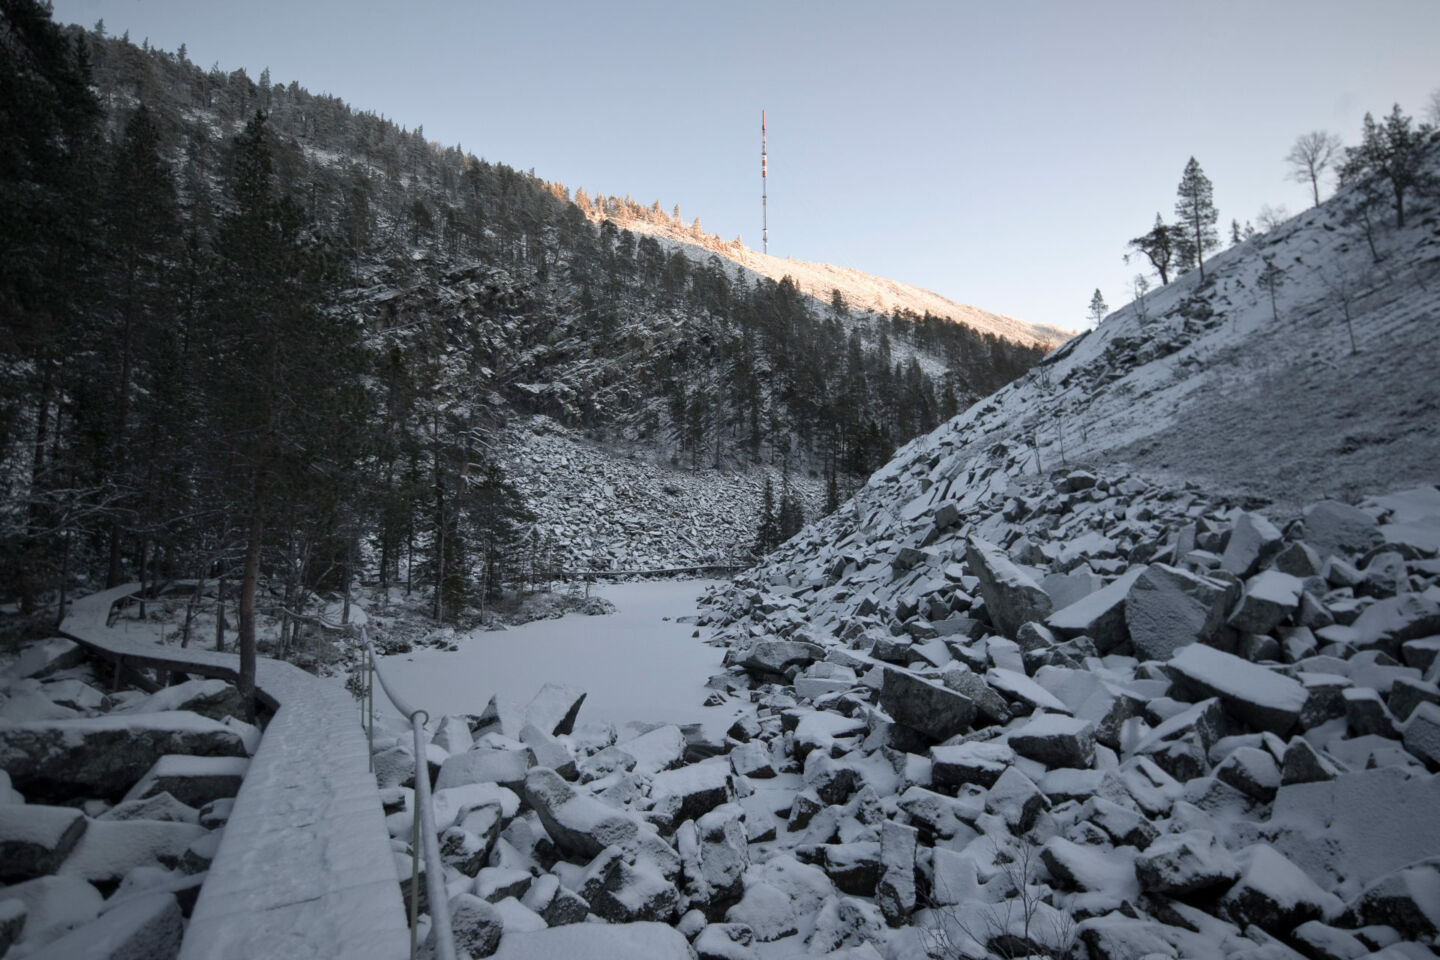 A snowy ravine in Pelkosenniemi, a wilderness film location in Finnish Lapland